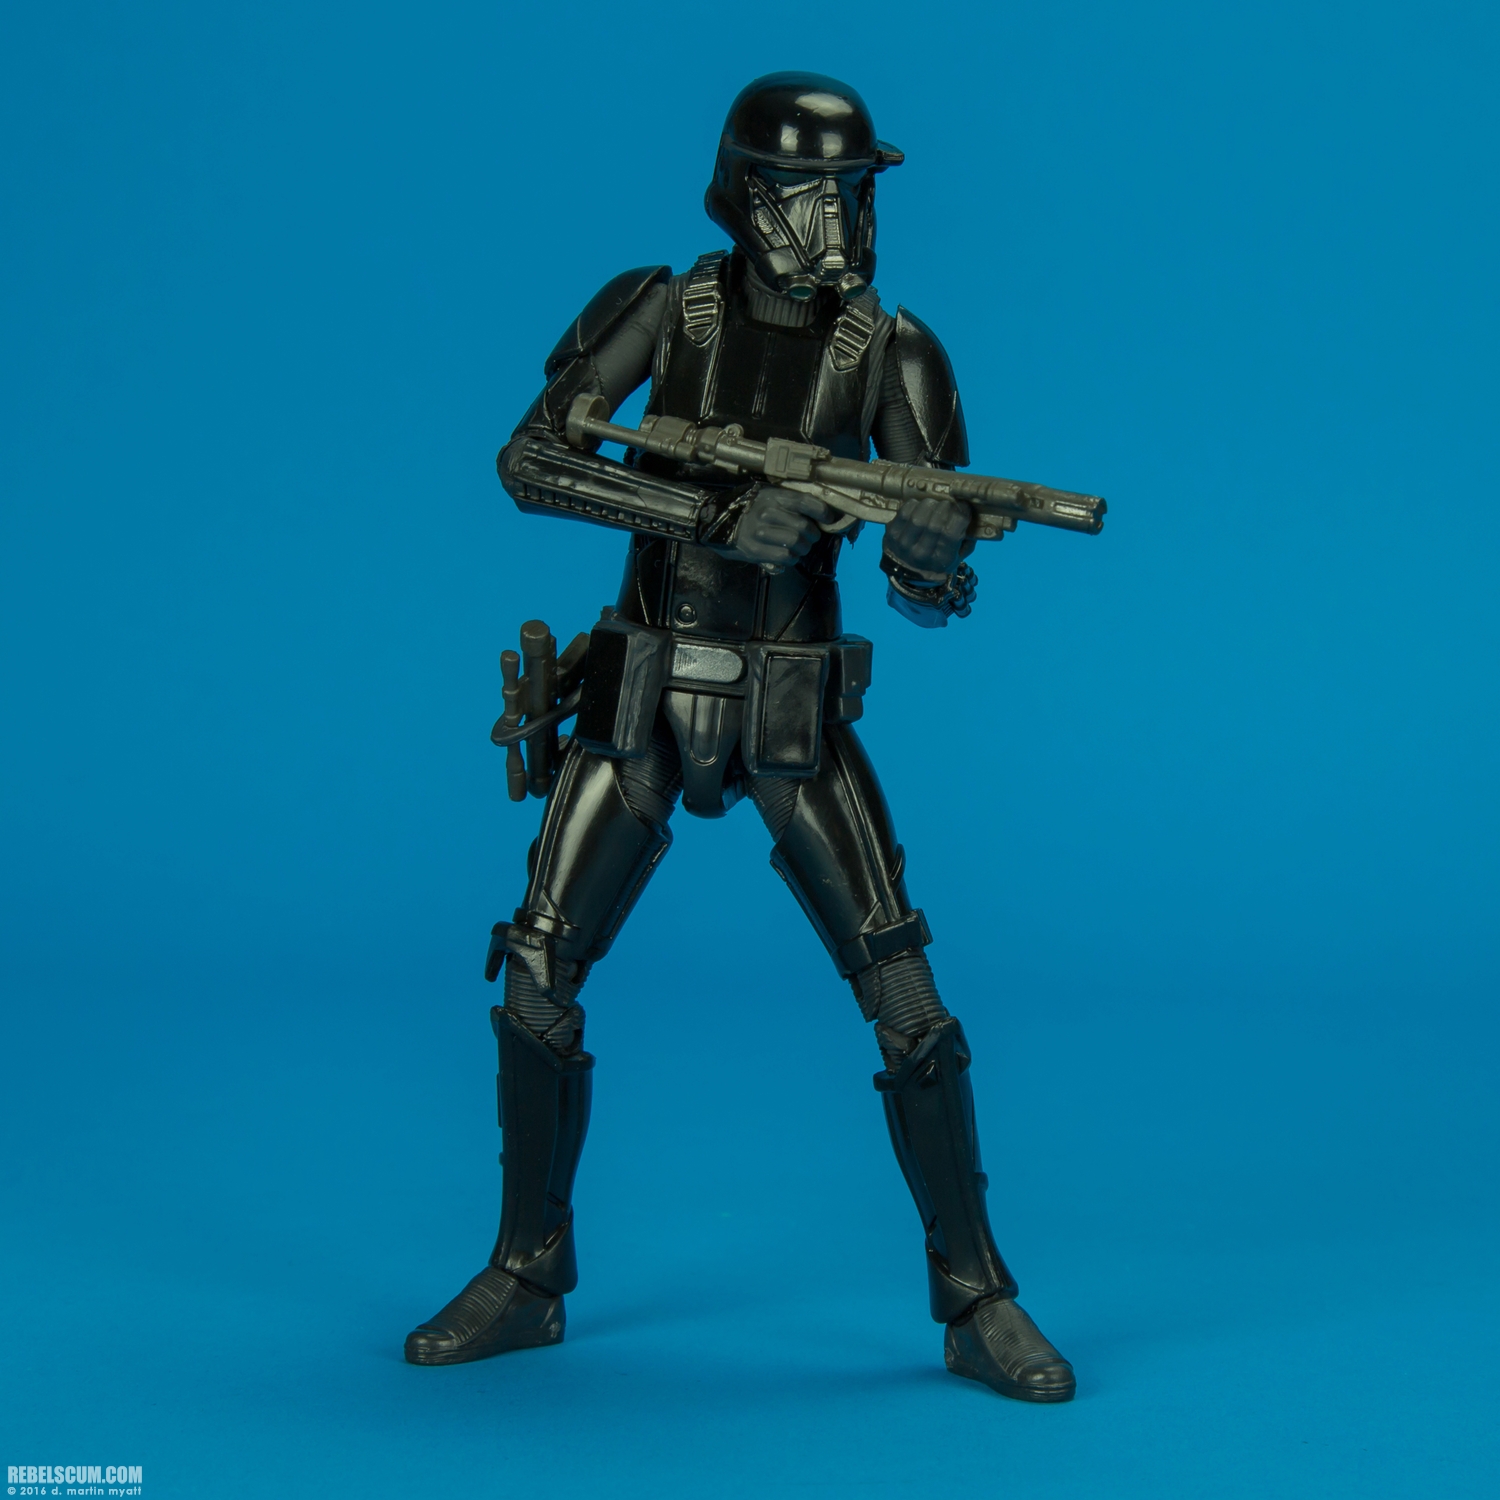 Imperial-Death-Trooper-25-The-Black-Series-6-inch-010.jpg